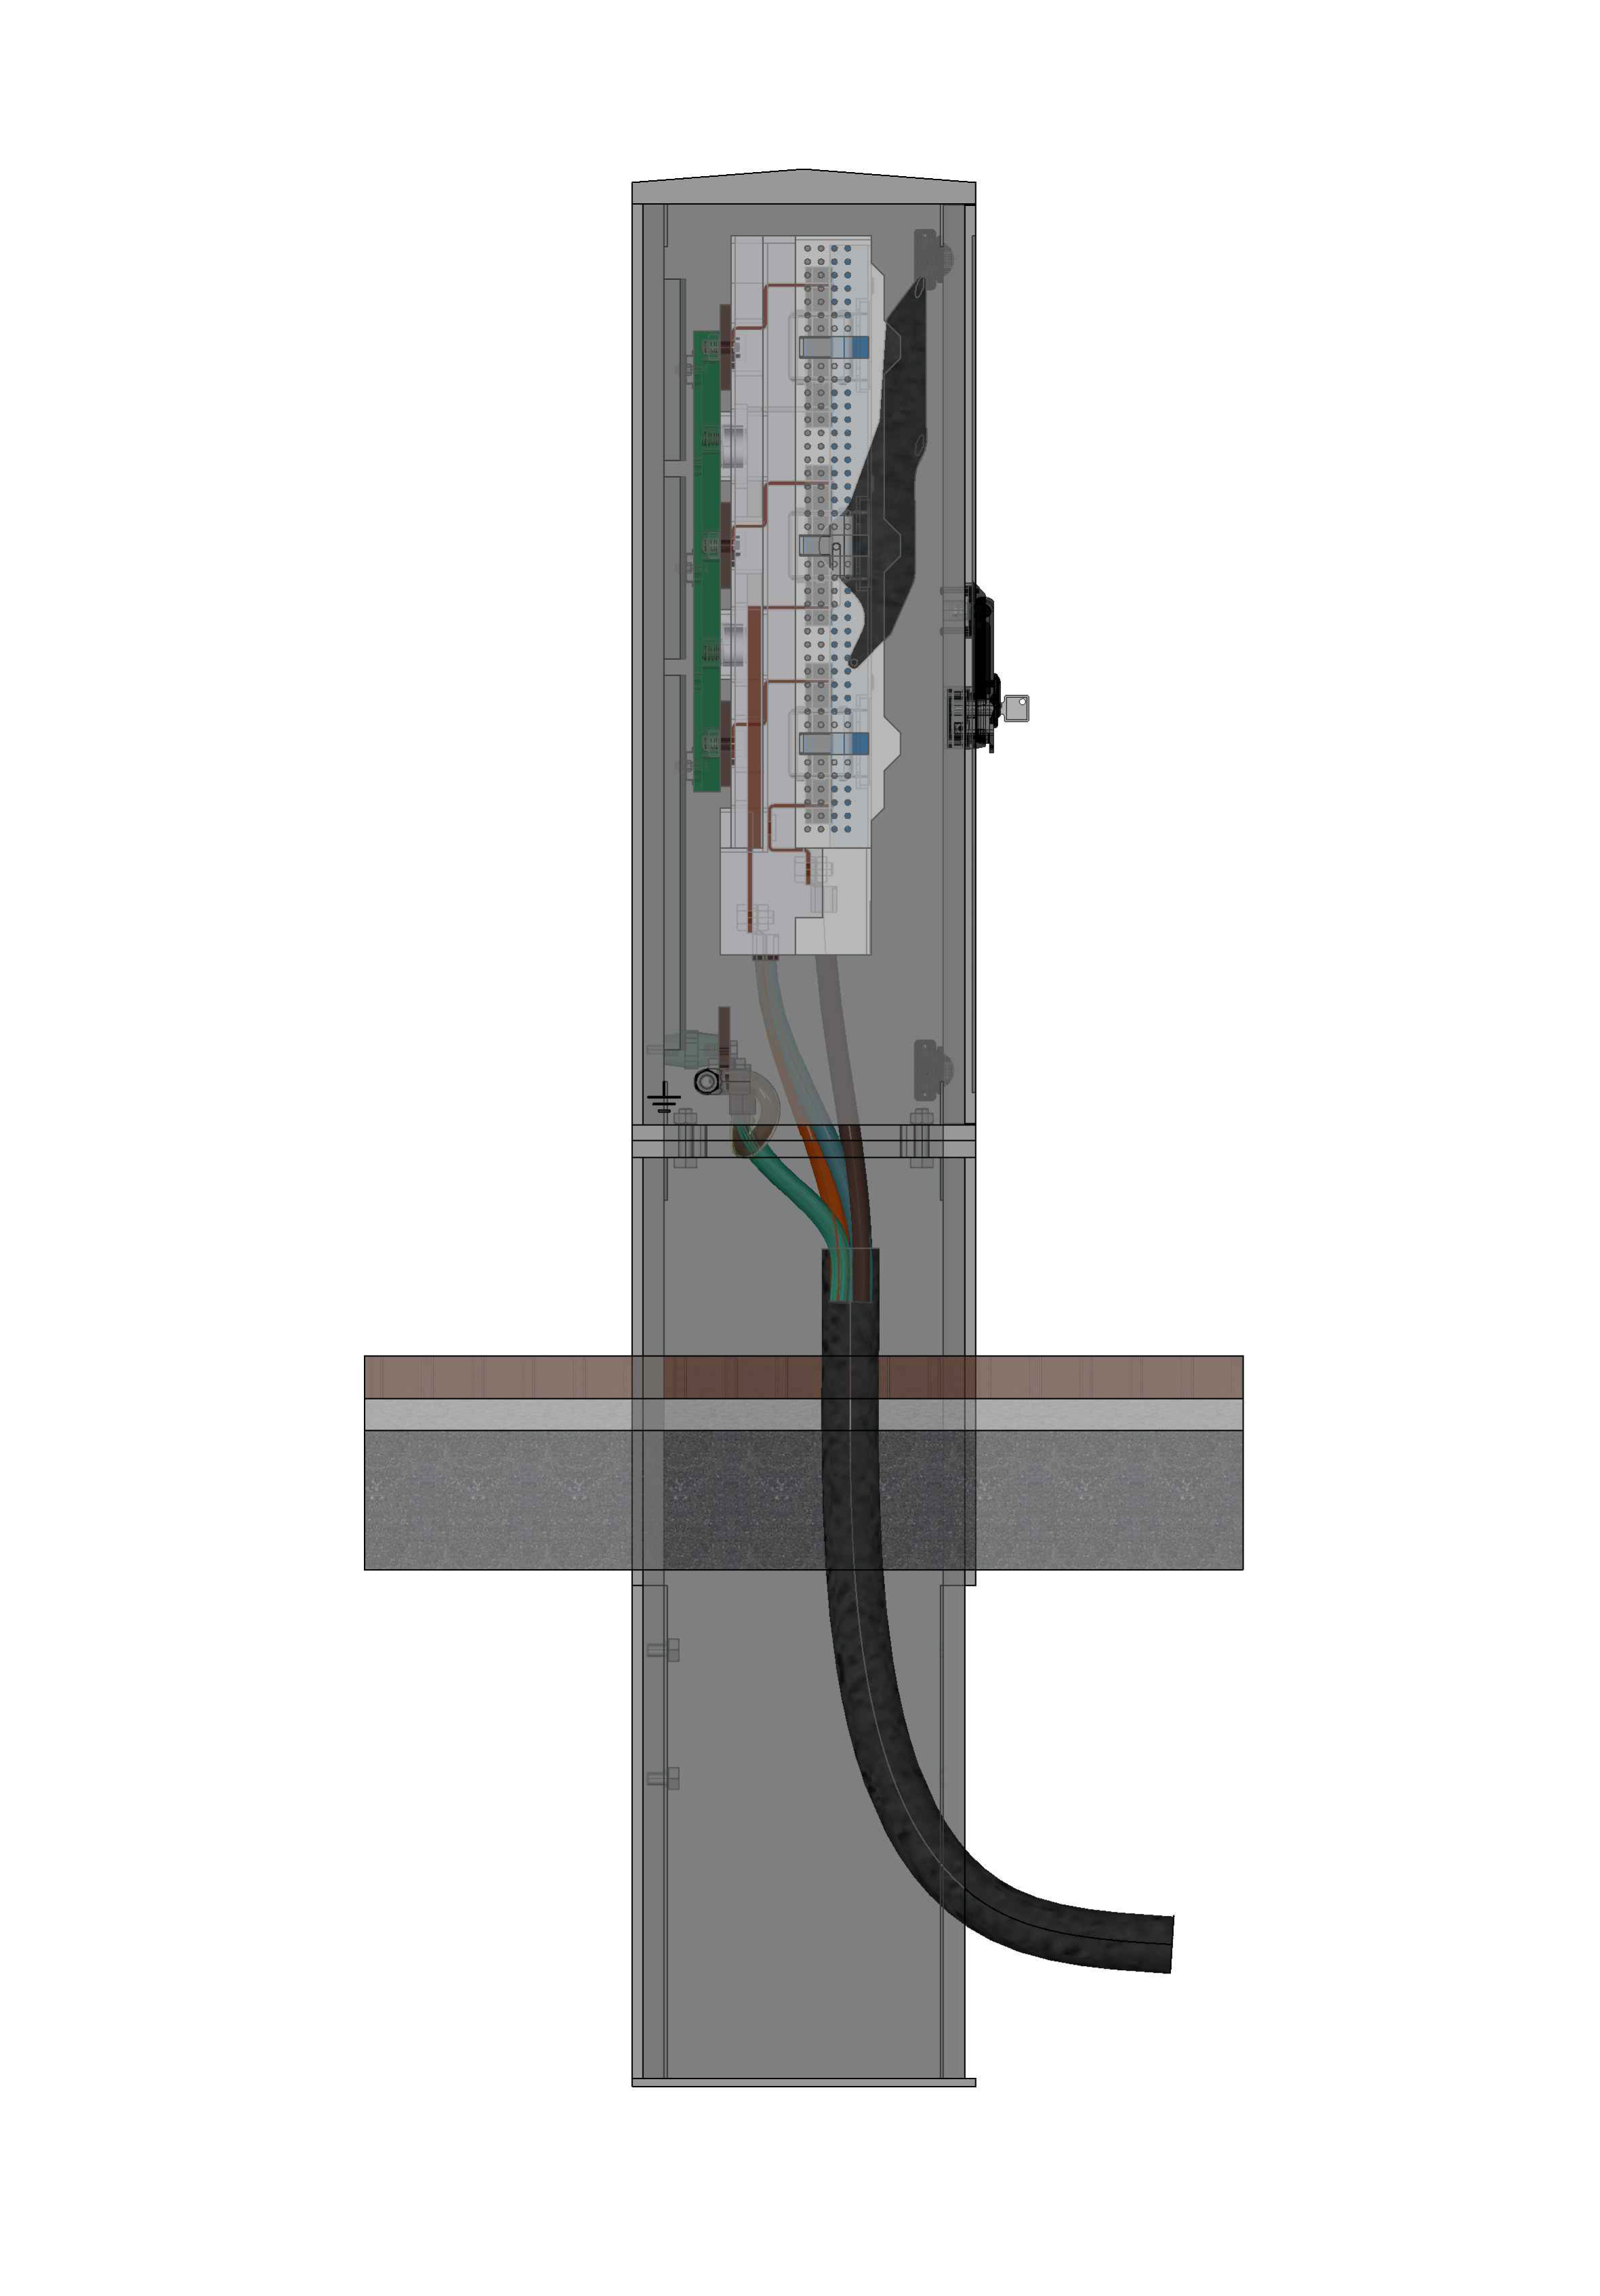 电力电缆配线架 - 配备 5 个低压 NH 熔断器